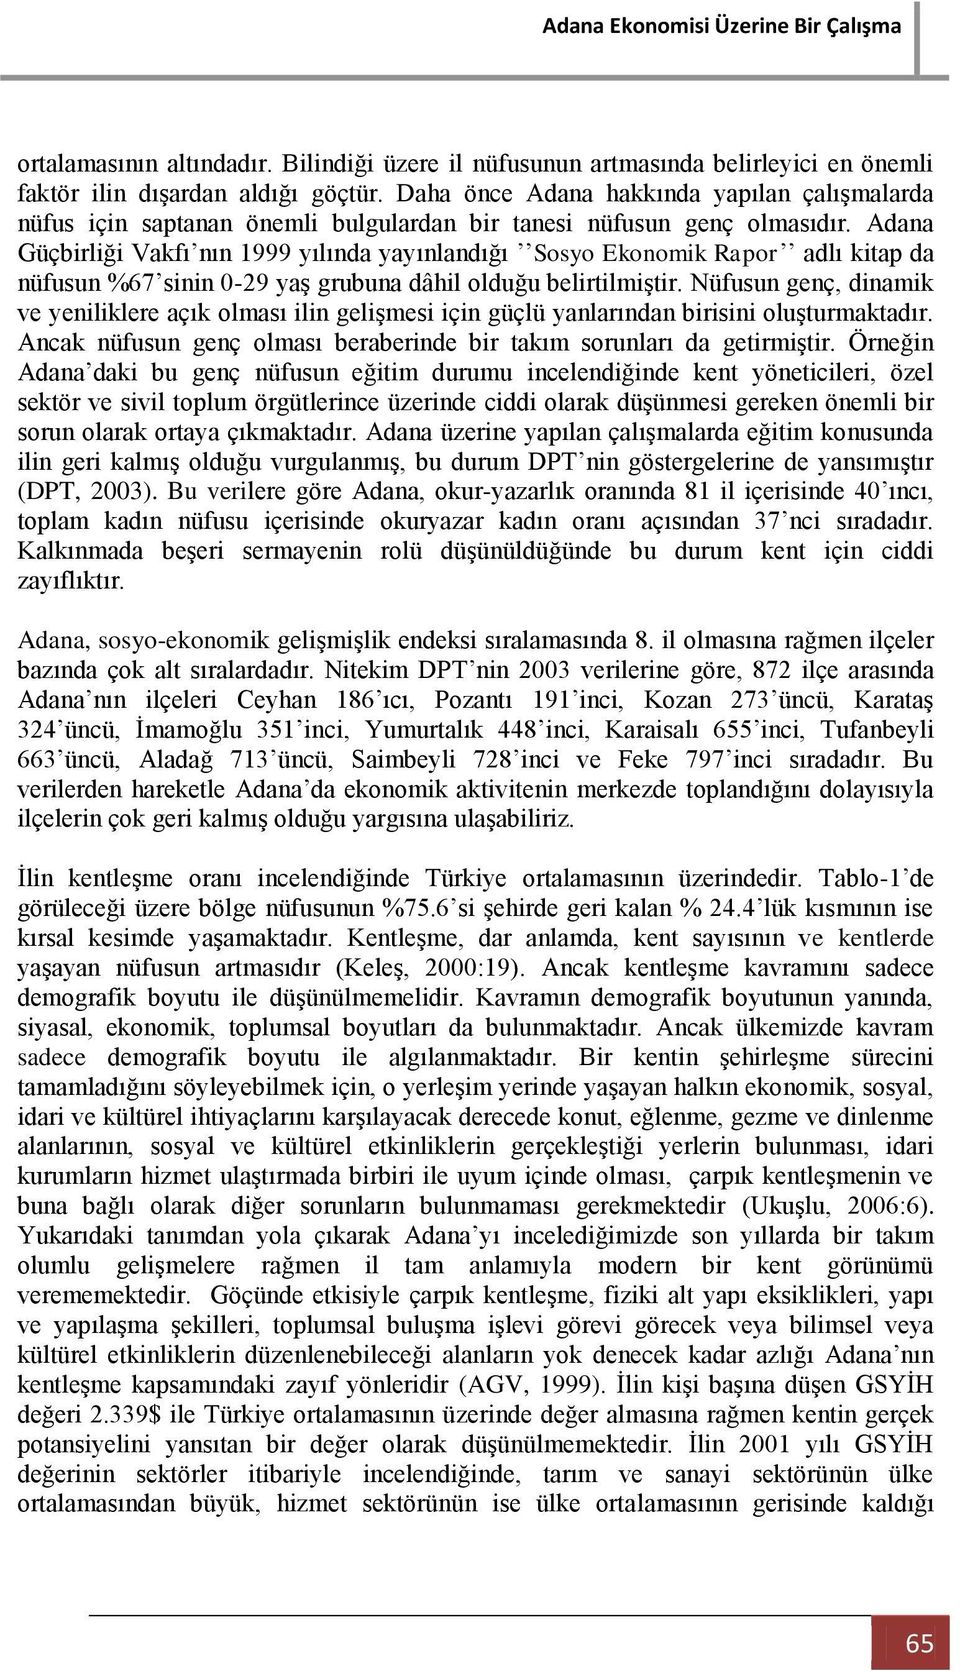 Adana Güçbirliği Vakfı nın 1999 yılında yayınlandığı Sosyo Ekonomik Rapor adlı kitap da nüfusun %67 sinin 0-29 yaş grubuna dâhil olduğu belirtilmiştir.